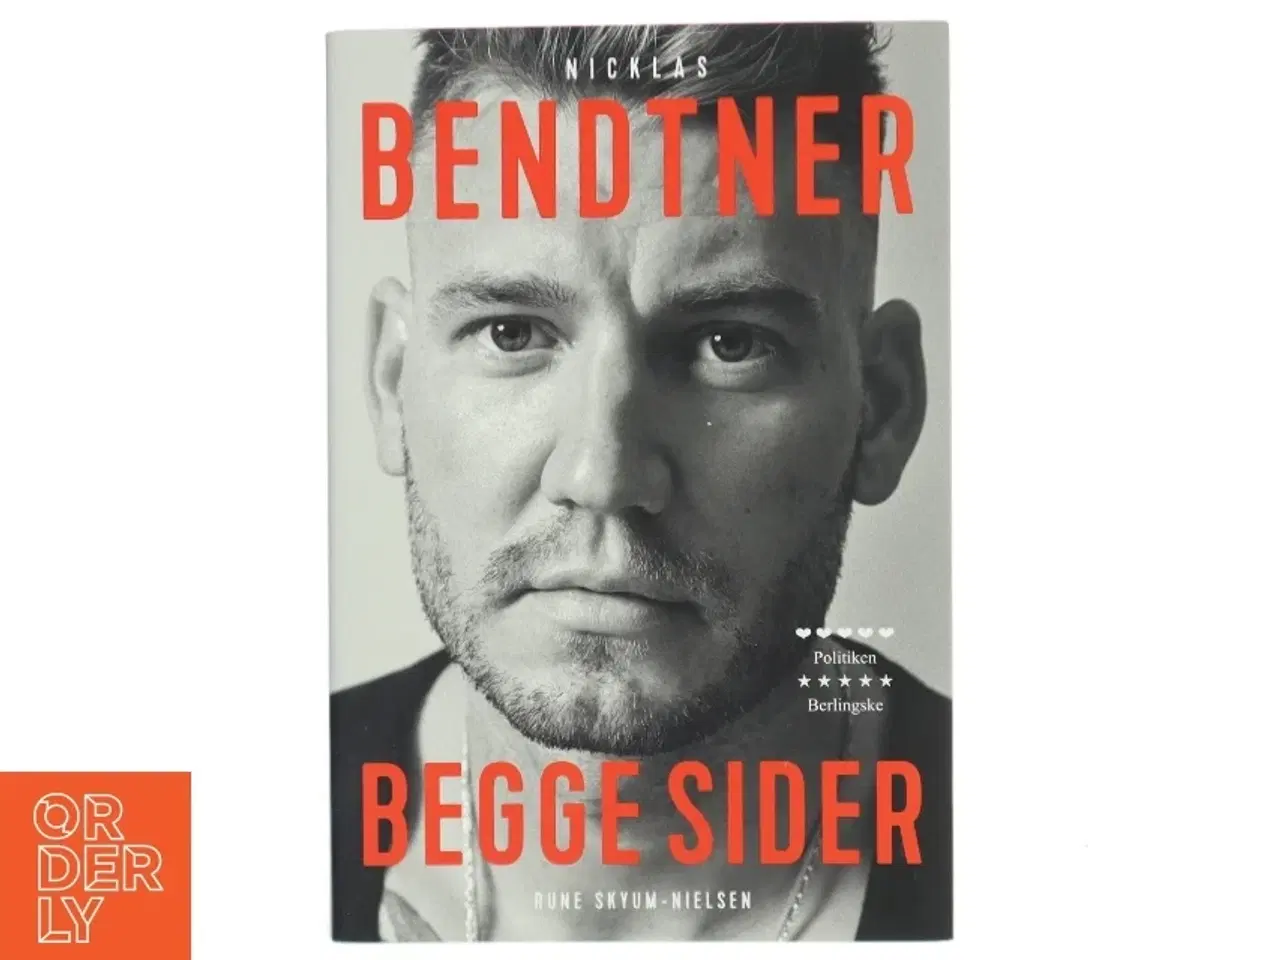 Billede 1 - Nicklas Bendtner - begge sider af Rune Skyum-Nielsen (Bog)